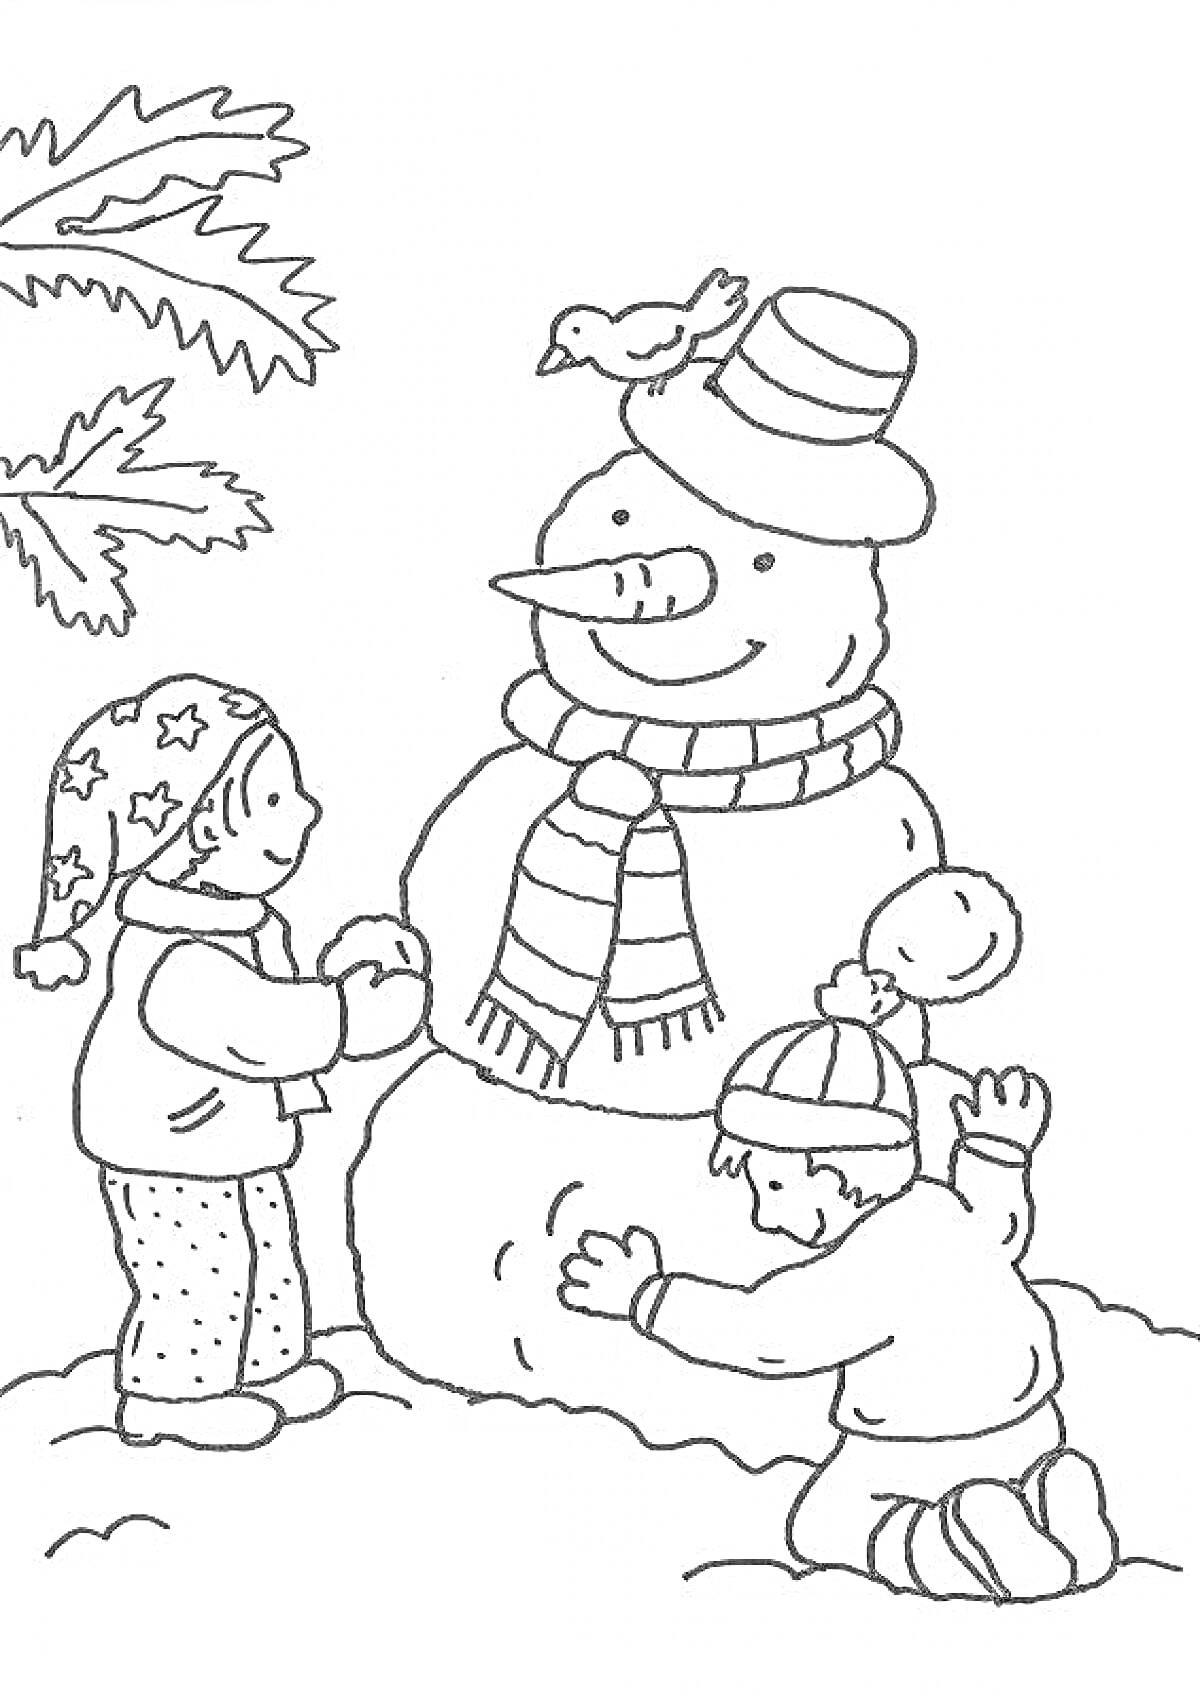 Раскраска дети лепят снеговика с шарфом и шляпой, птица на шляпе, дерево